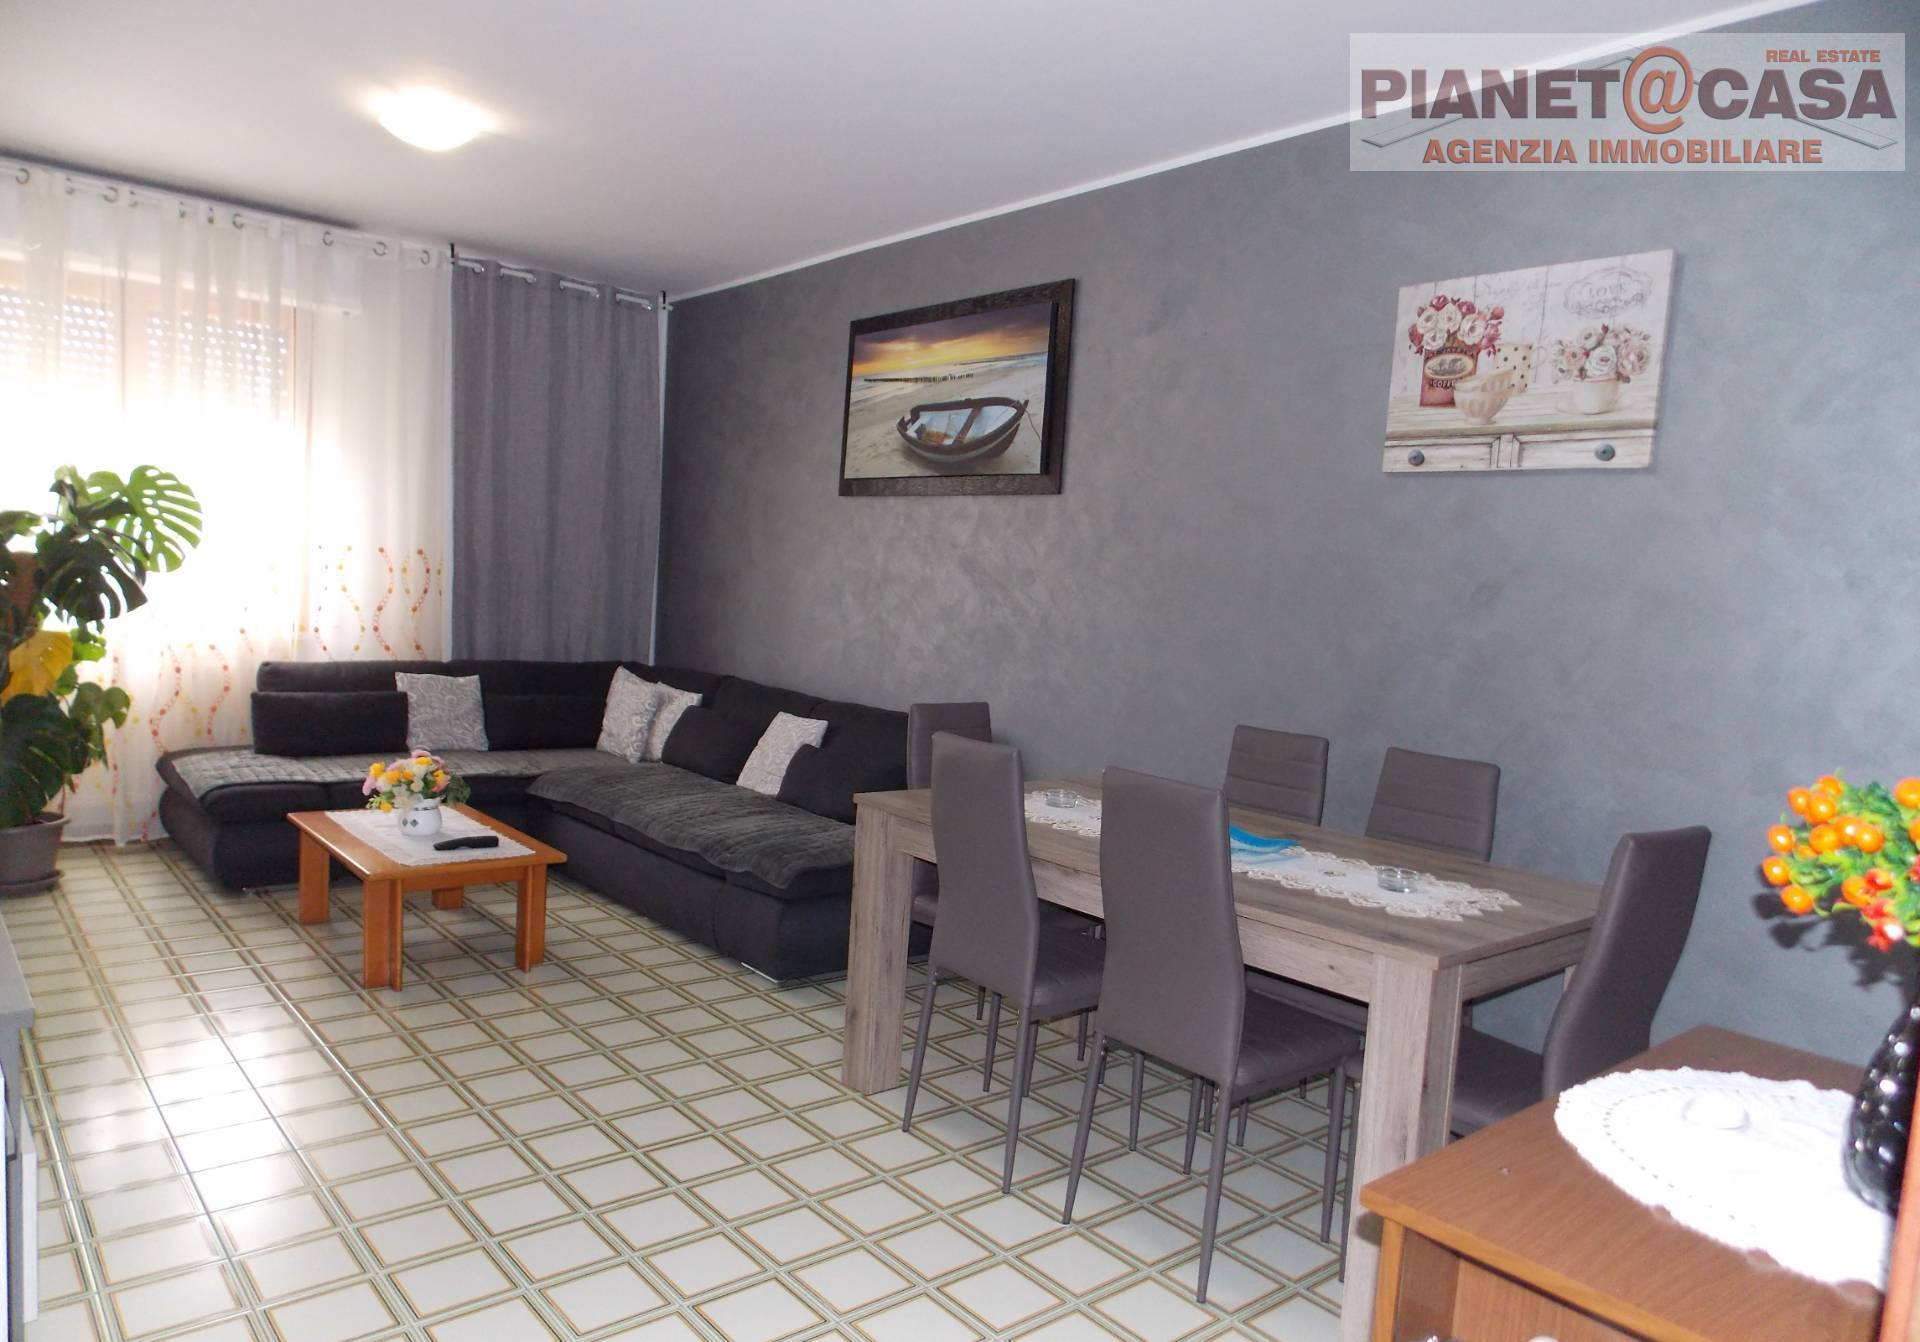 Appartamento in vendita a Spinetoli, 4 locali, zona Località: PAGLIAREDELTRONTO, prezzo € 99.000 | PortaleAgenzieImmobiliari.it